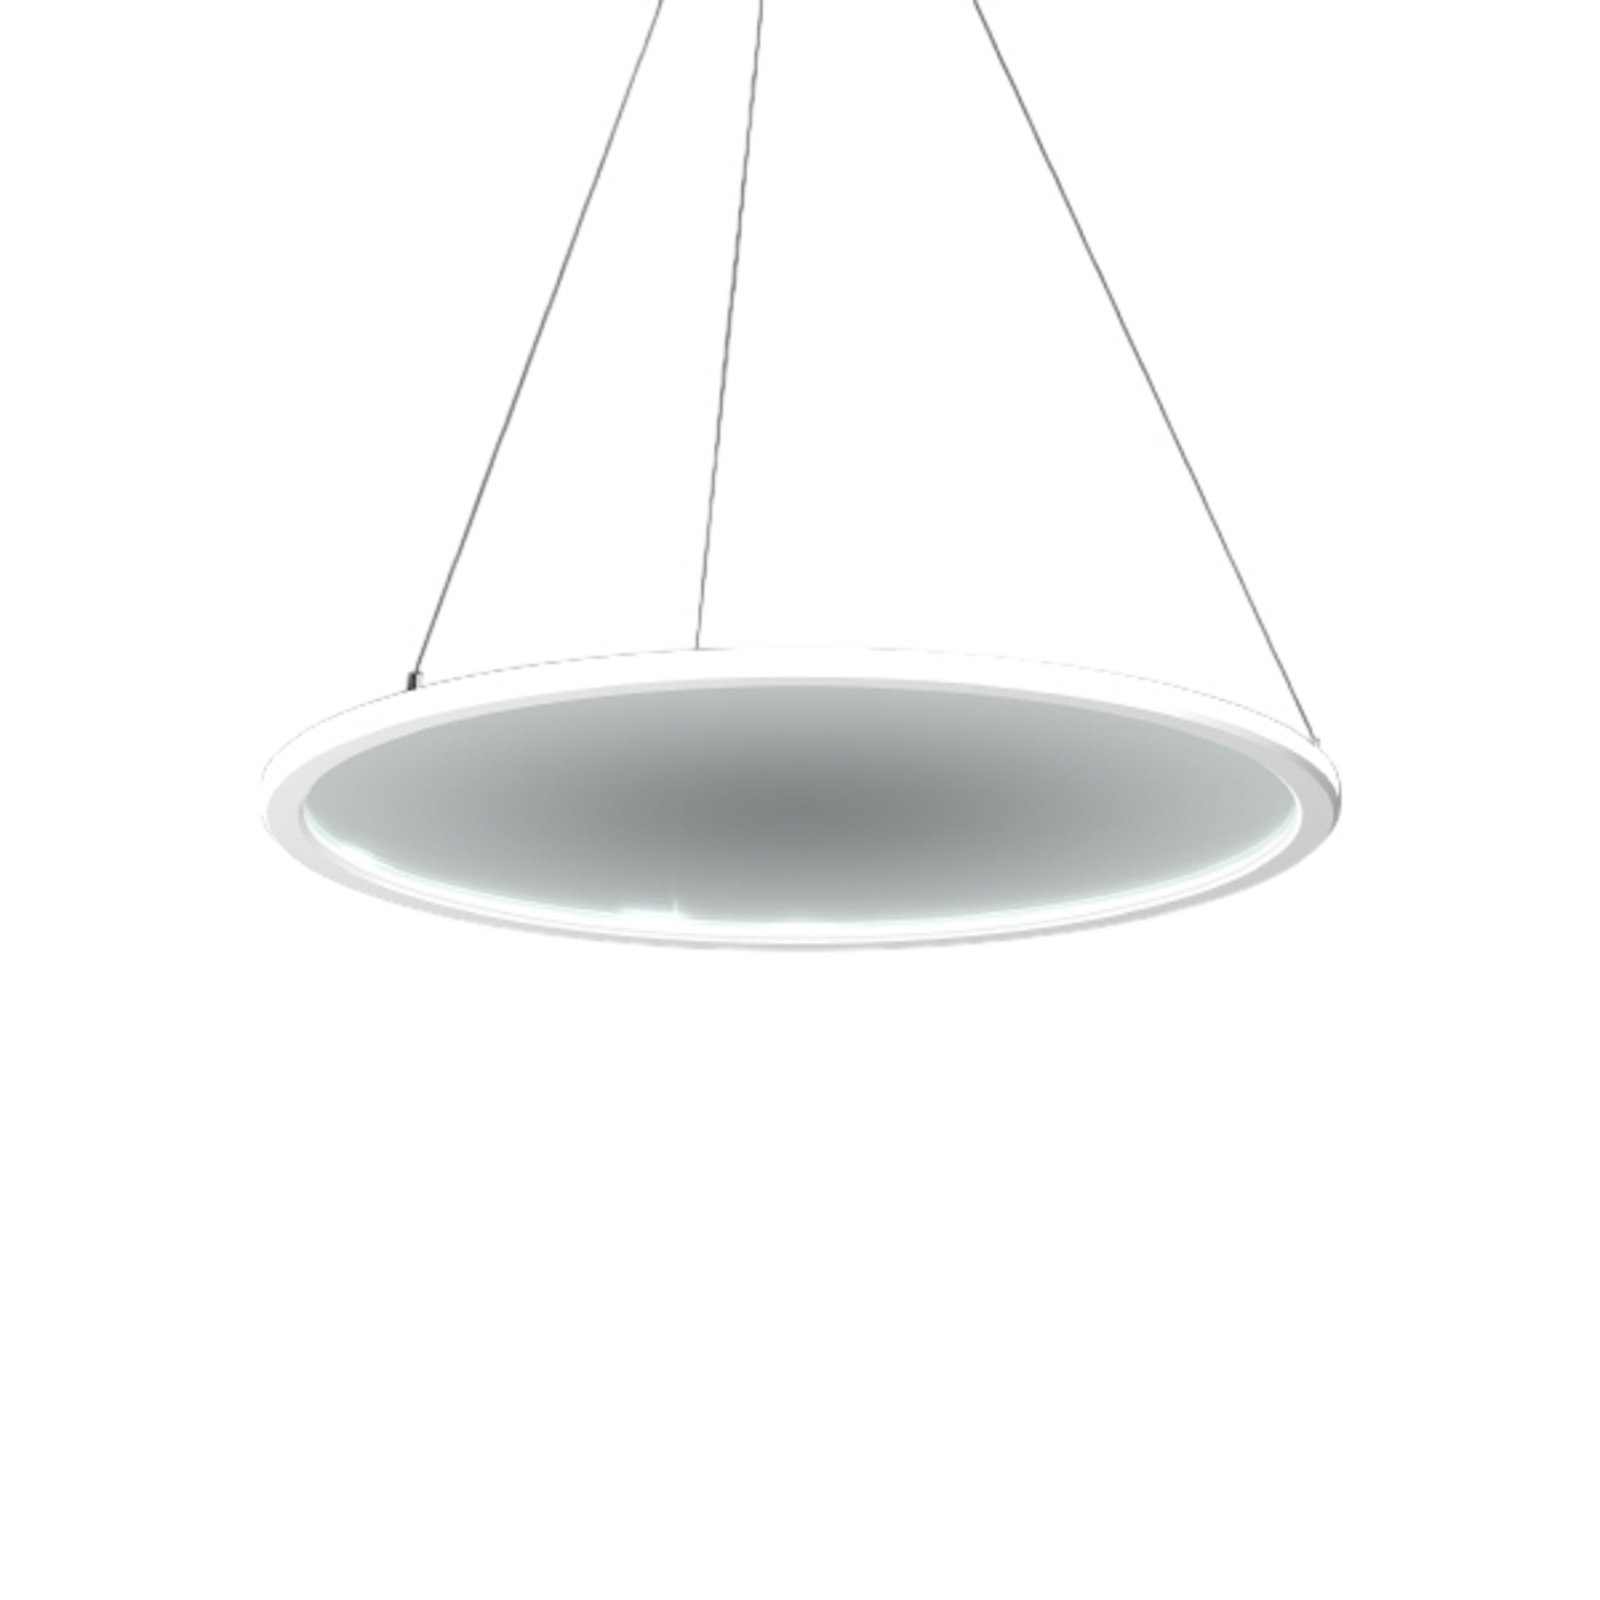 RZB Sidelite Eco hanglamp Ø 58cm helder 3.000 K